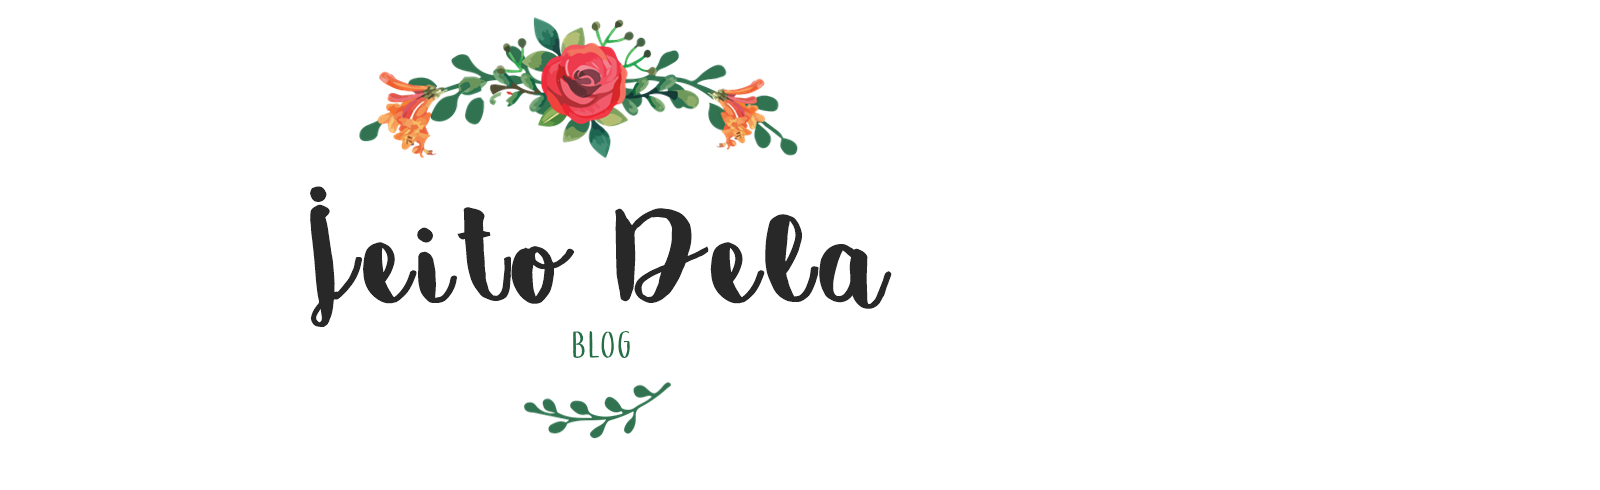 Jeito Dela | Blog